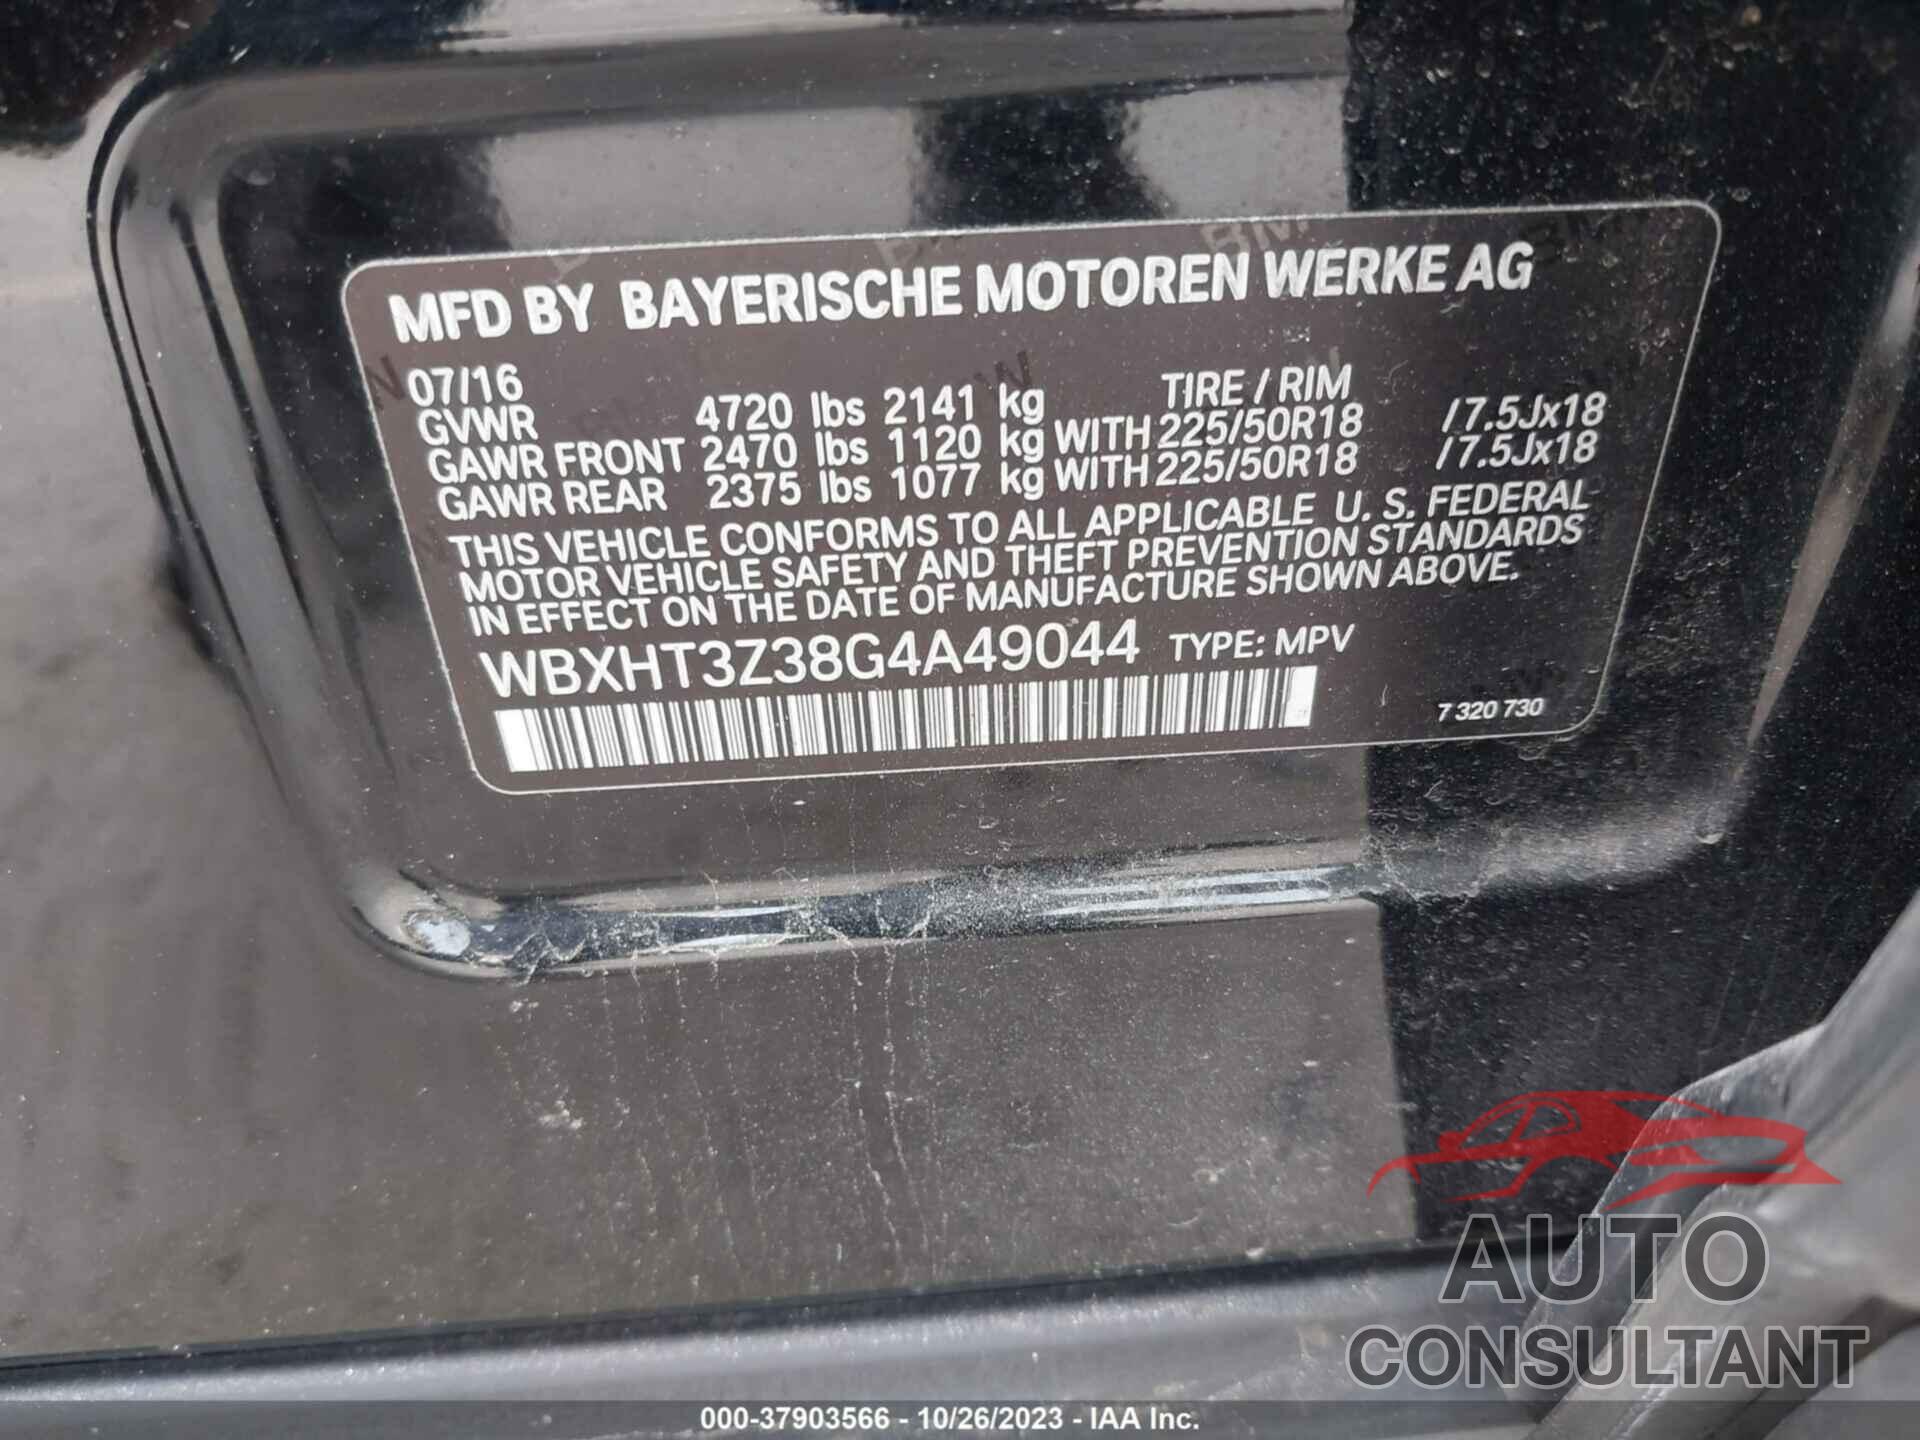 BMW X1 2016 - WBXHT3Z38G4A49044